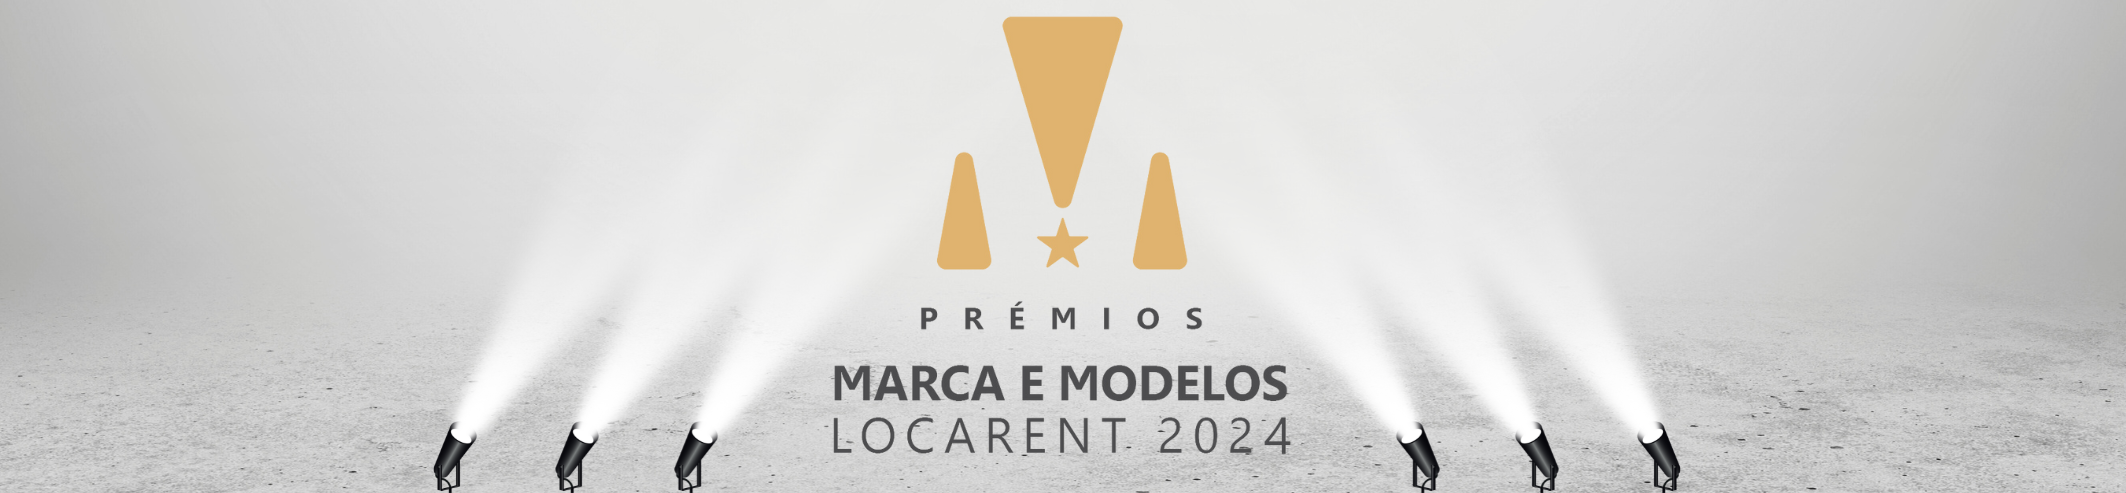 Marca e Modelos do Ano Locarent 2024